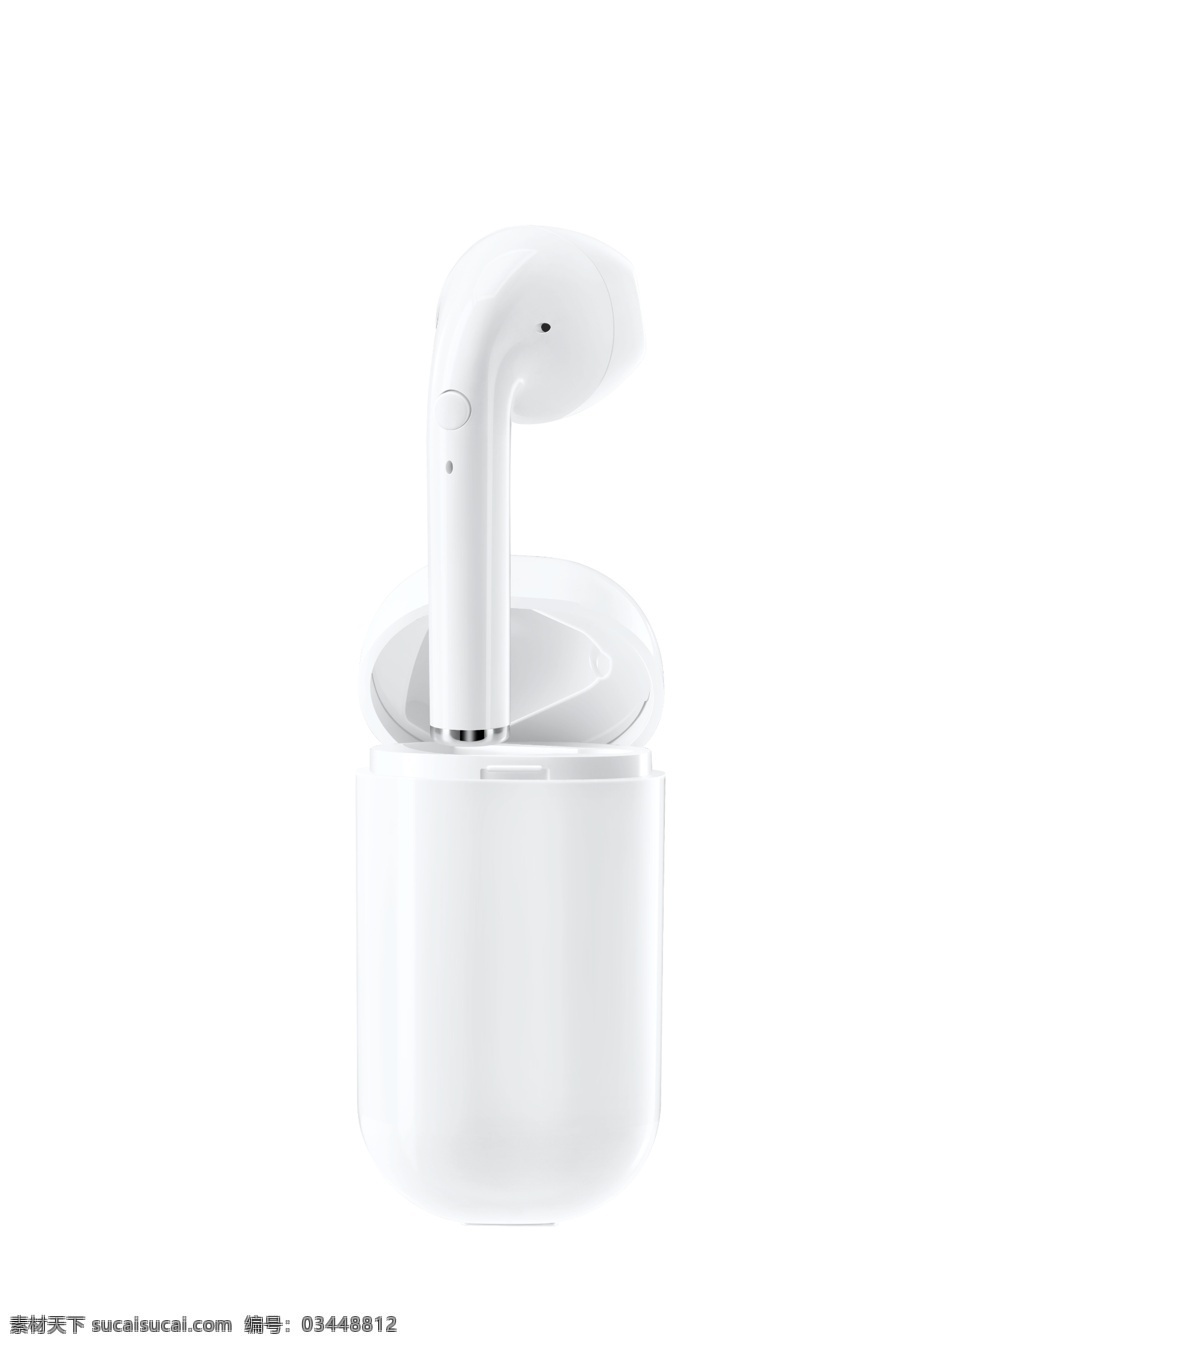 苹果耳机 耳机 蓝牙耳机 充电仓耳机 无线耳机 精修图 分层